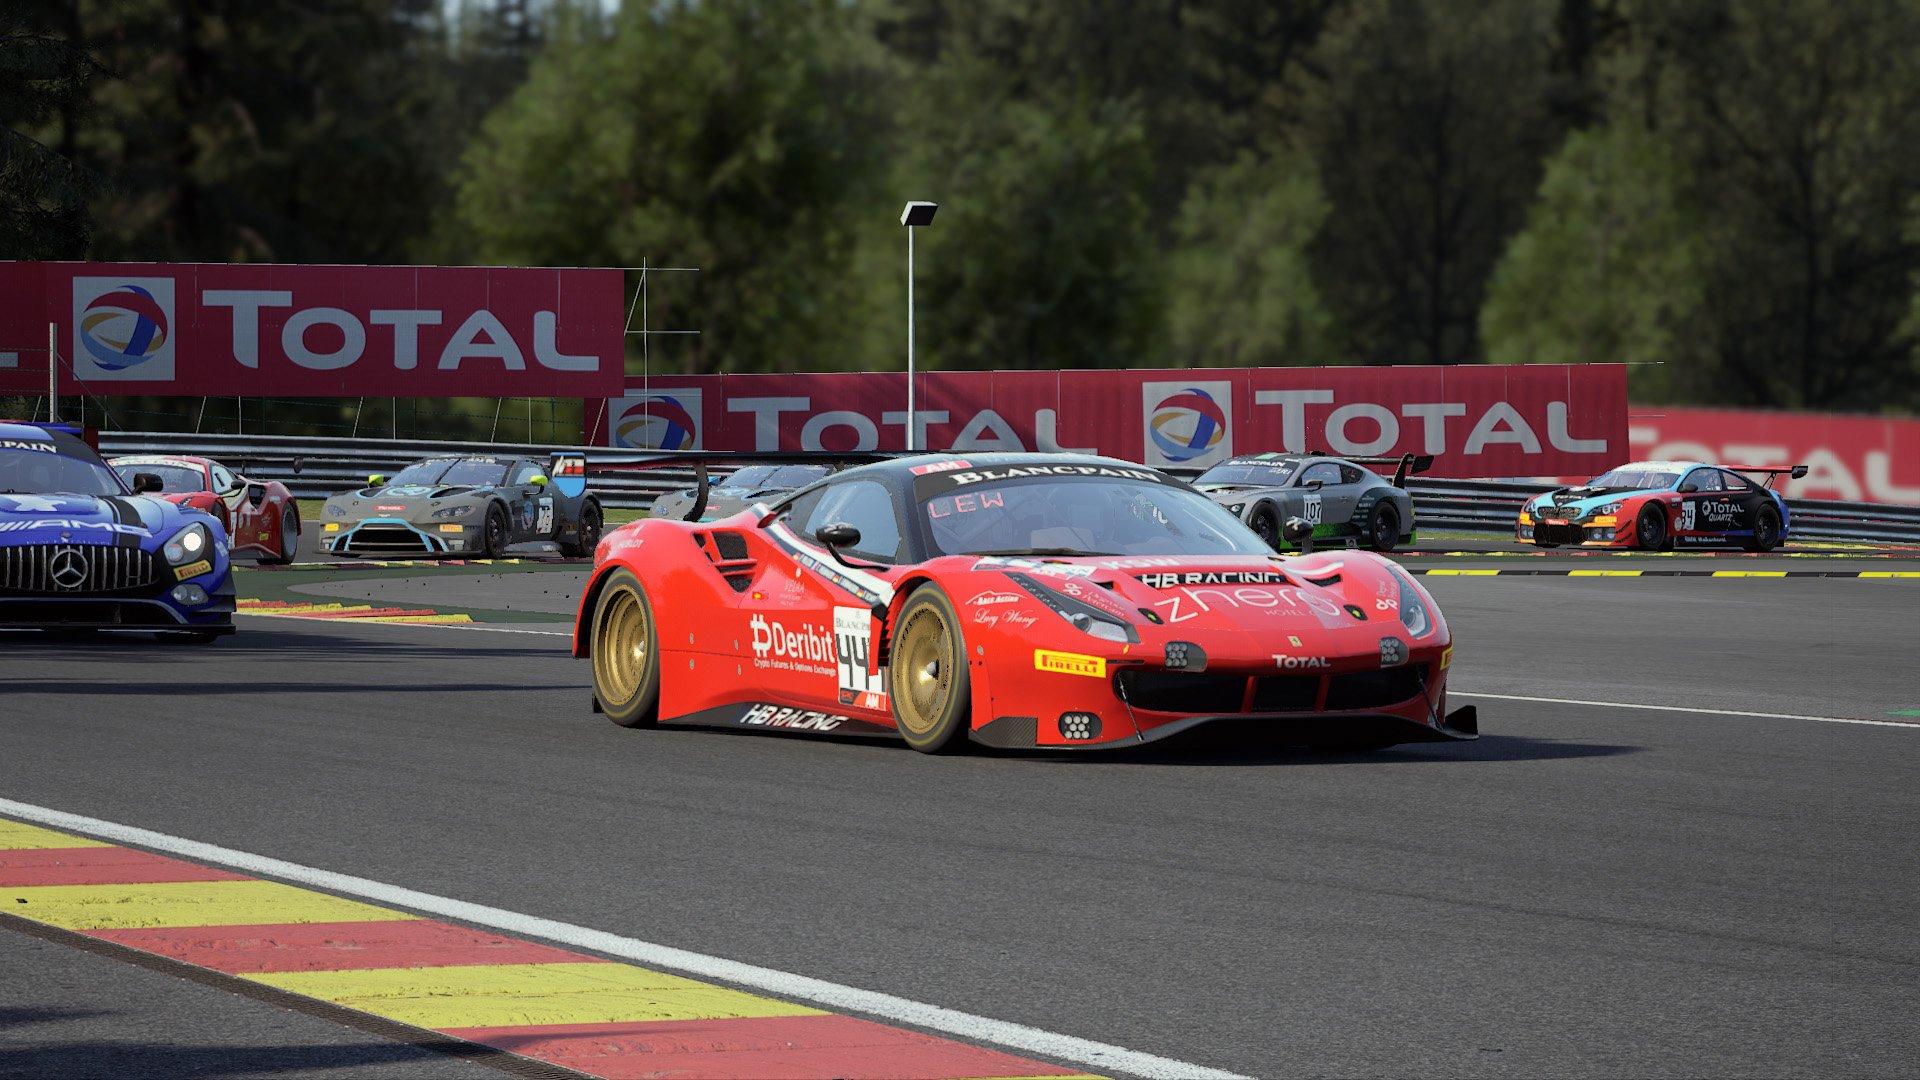 Assetto Corsa Competizione Review: Laser-Focused Yet Fun Sim